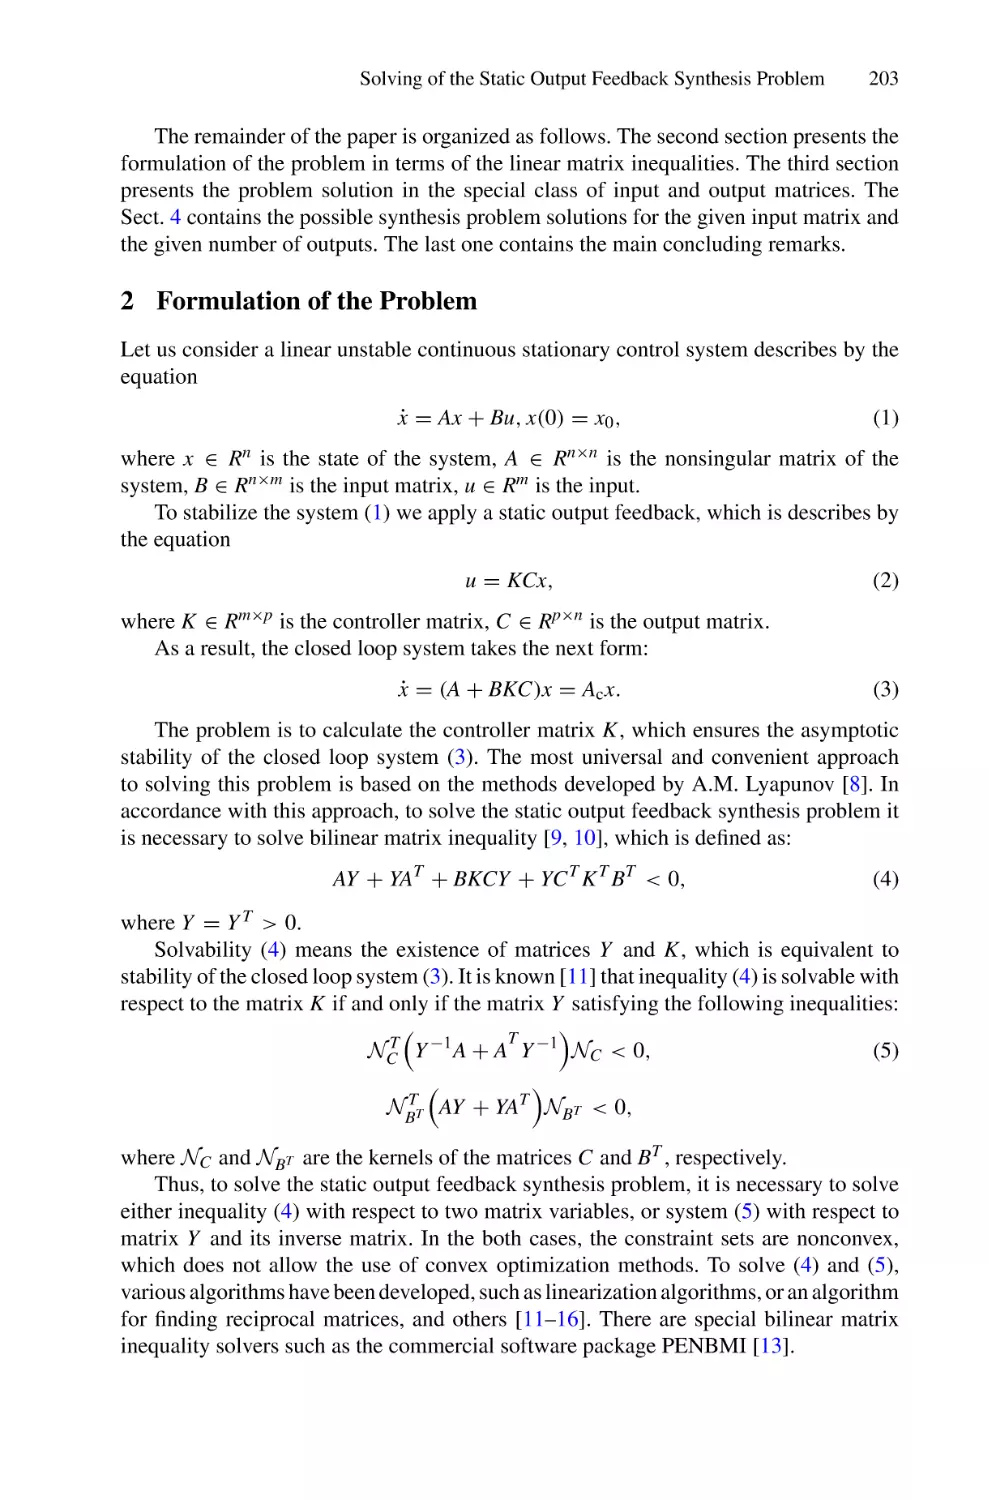 2 Formulation of the Problem